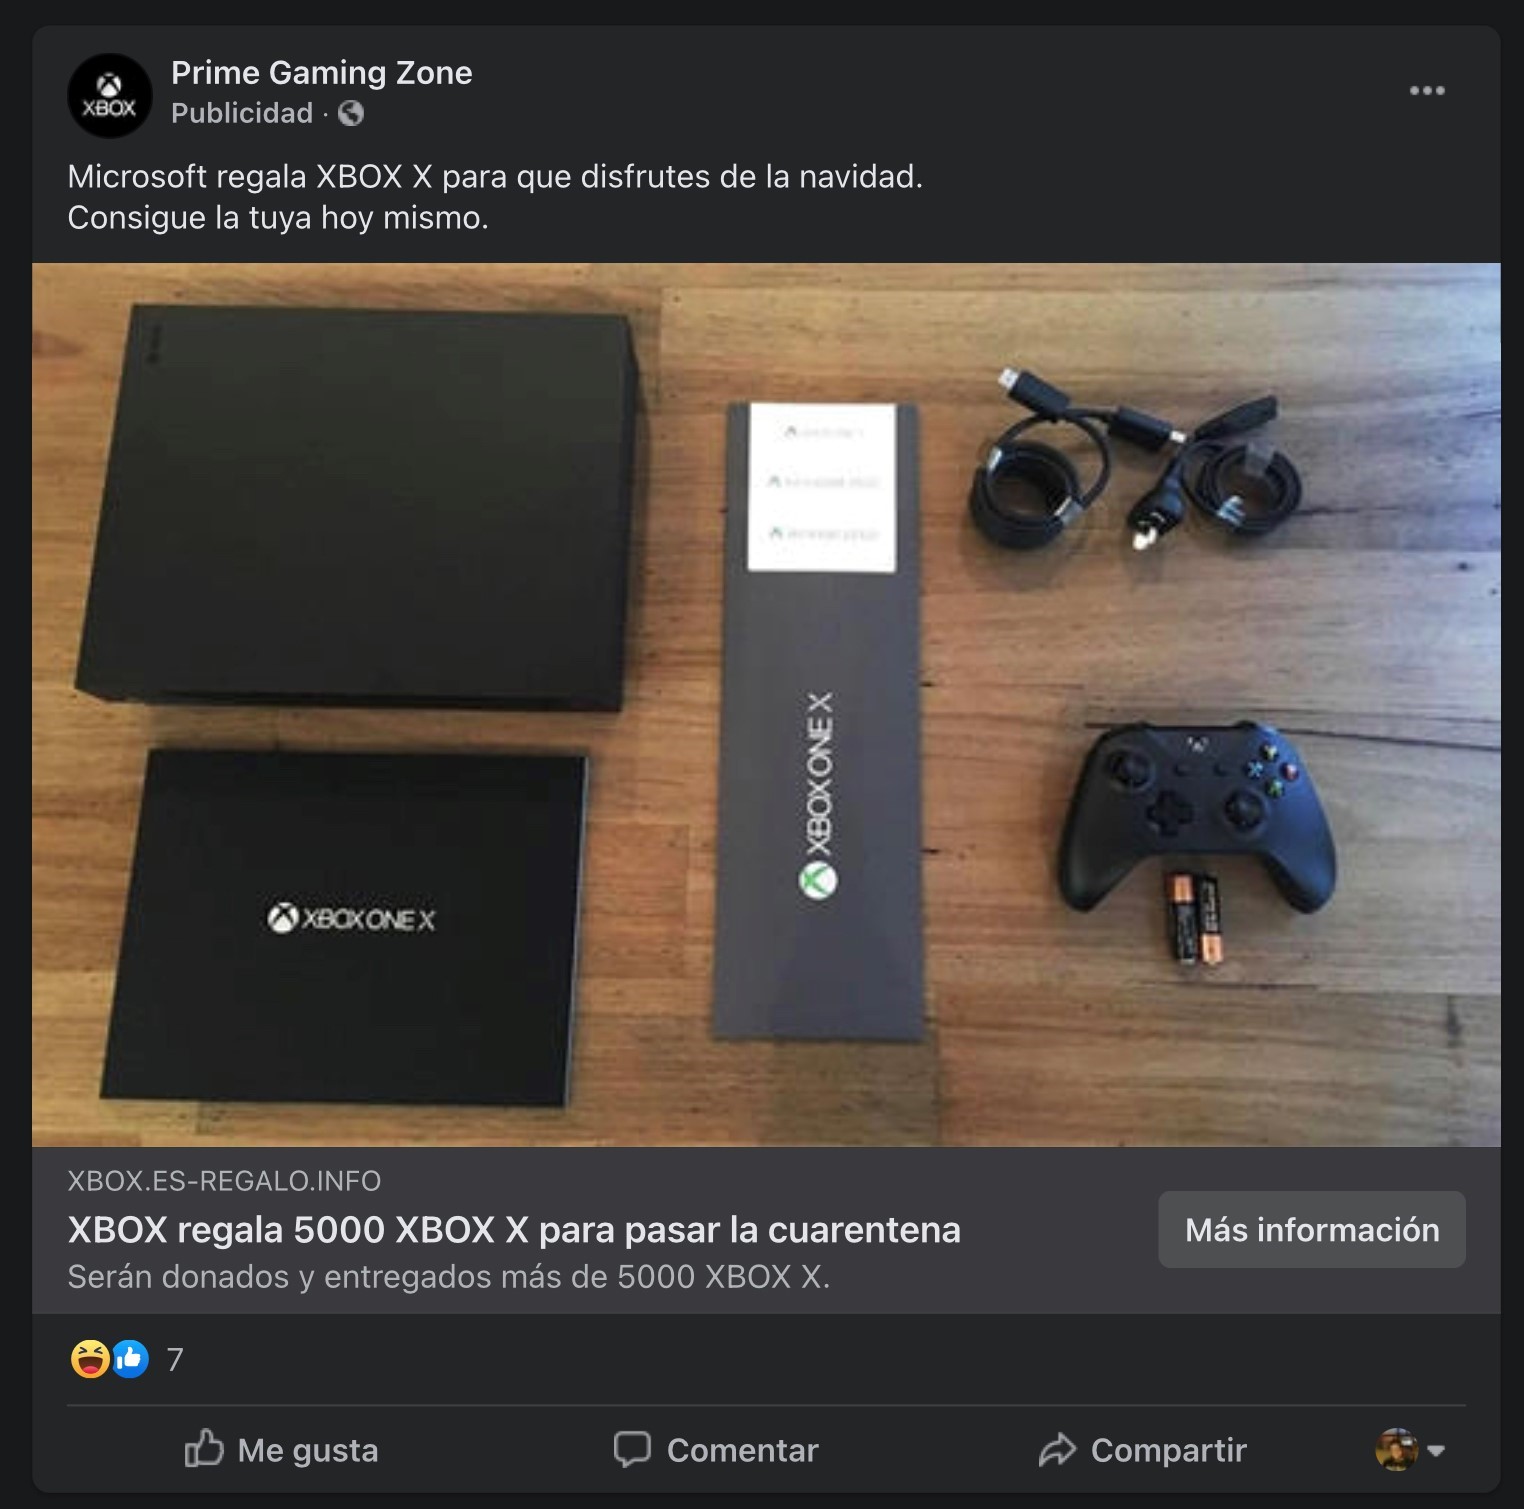 Un falso anuncio de Facebook se difunde en España con del lanzamiento de la nueva Series X de Xbox y es un engaño para obtener datos